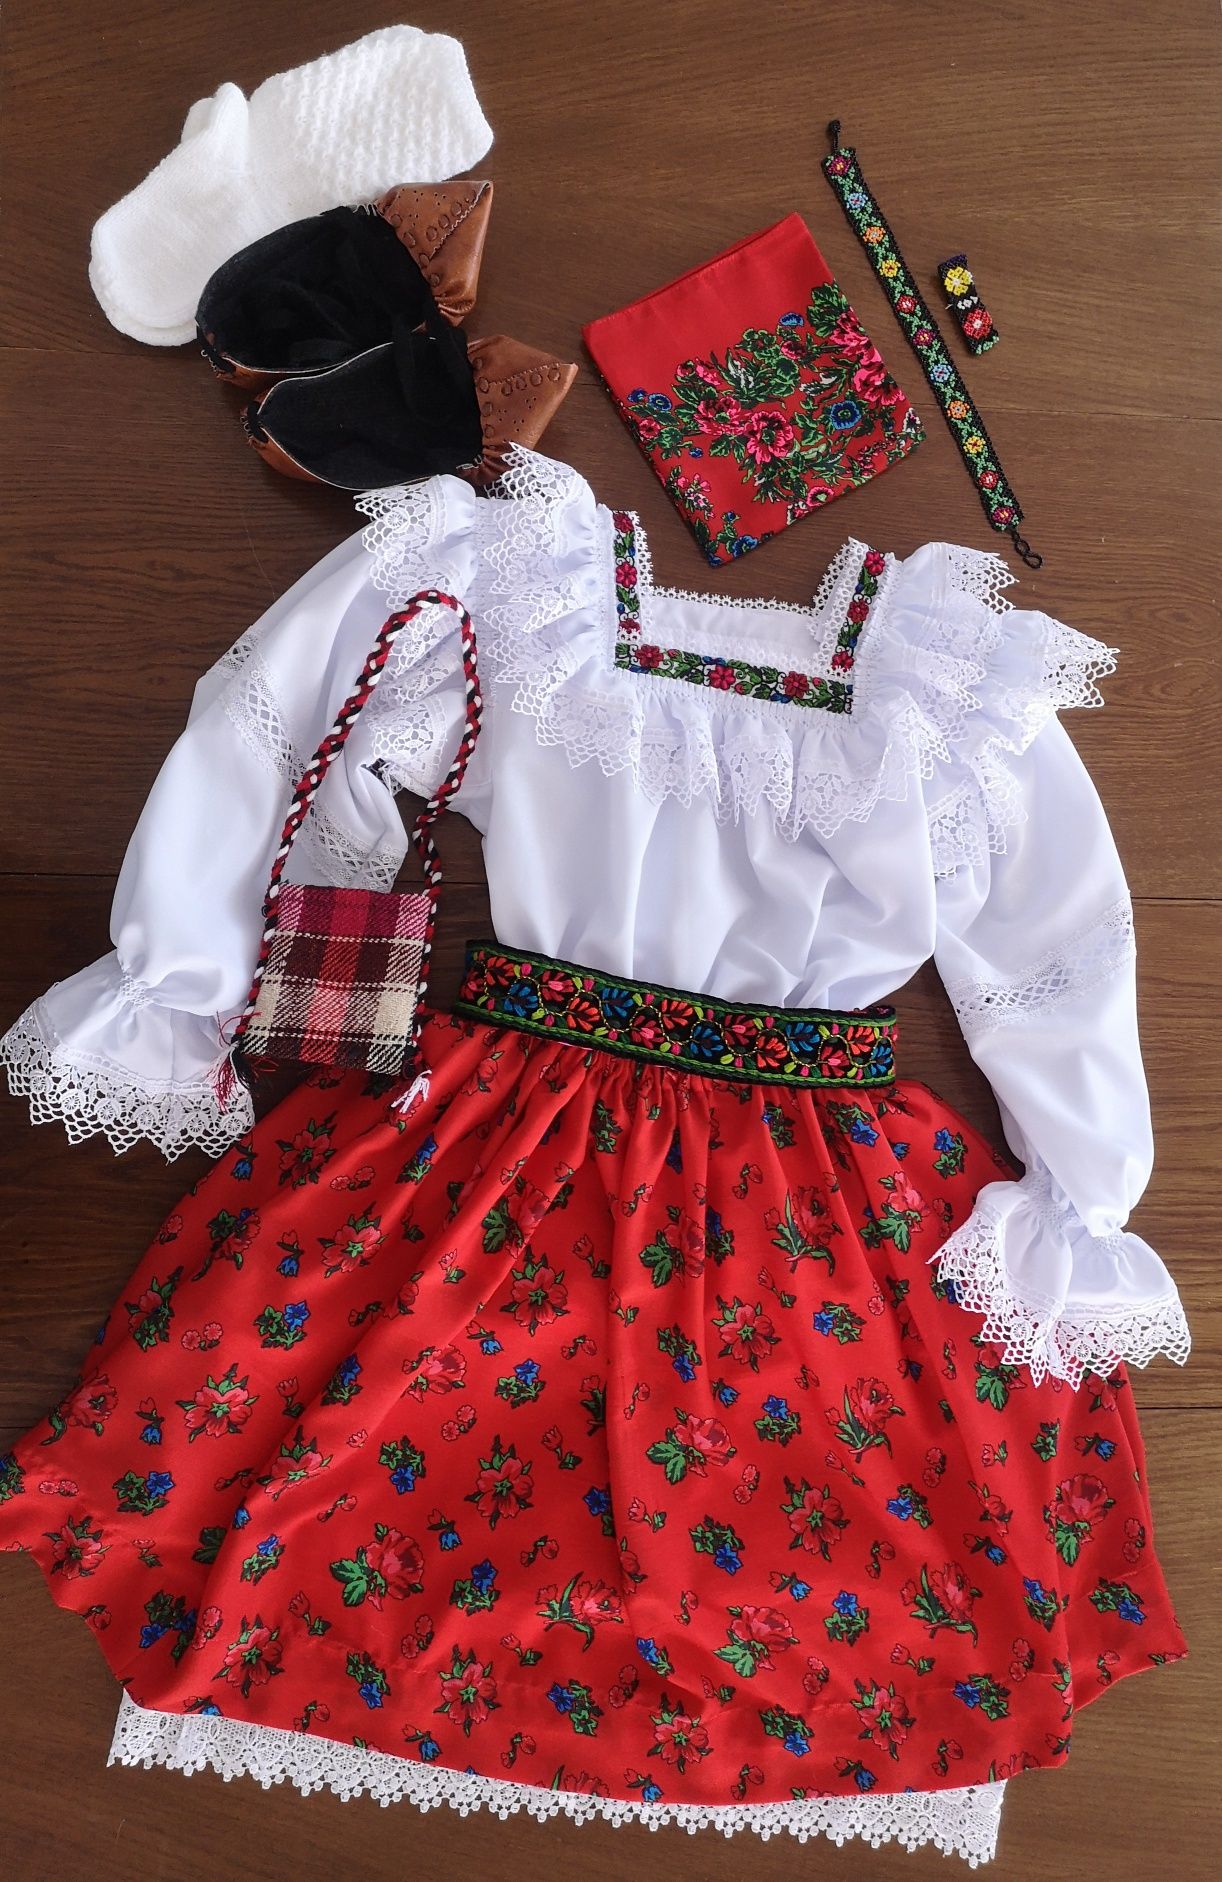 Costum popular complet pentru femei de Maramures rosu